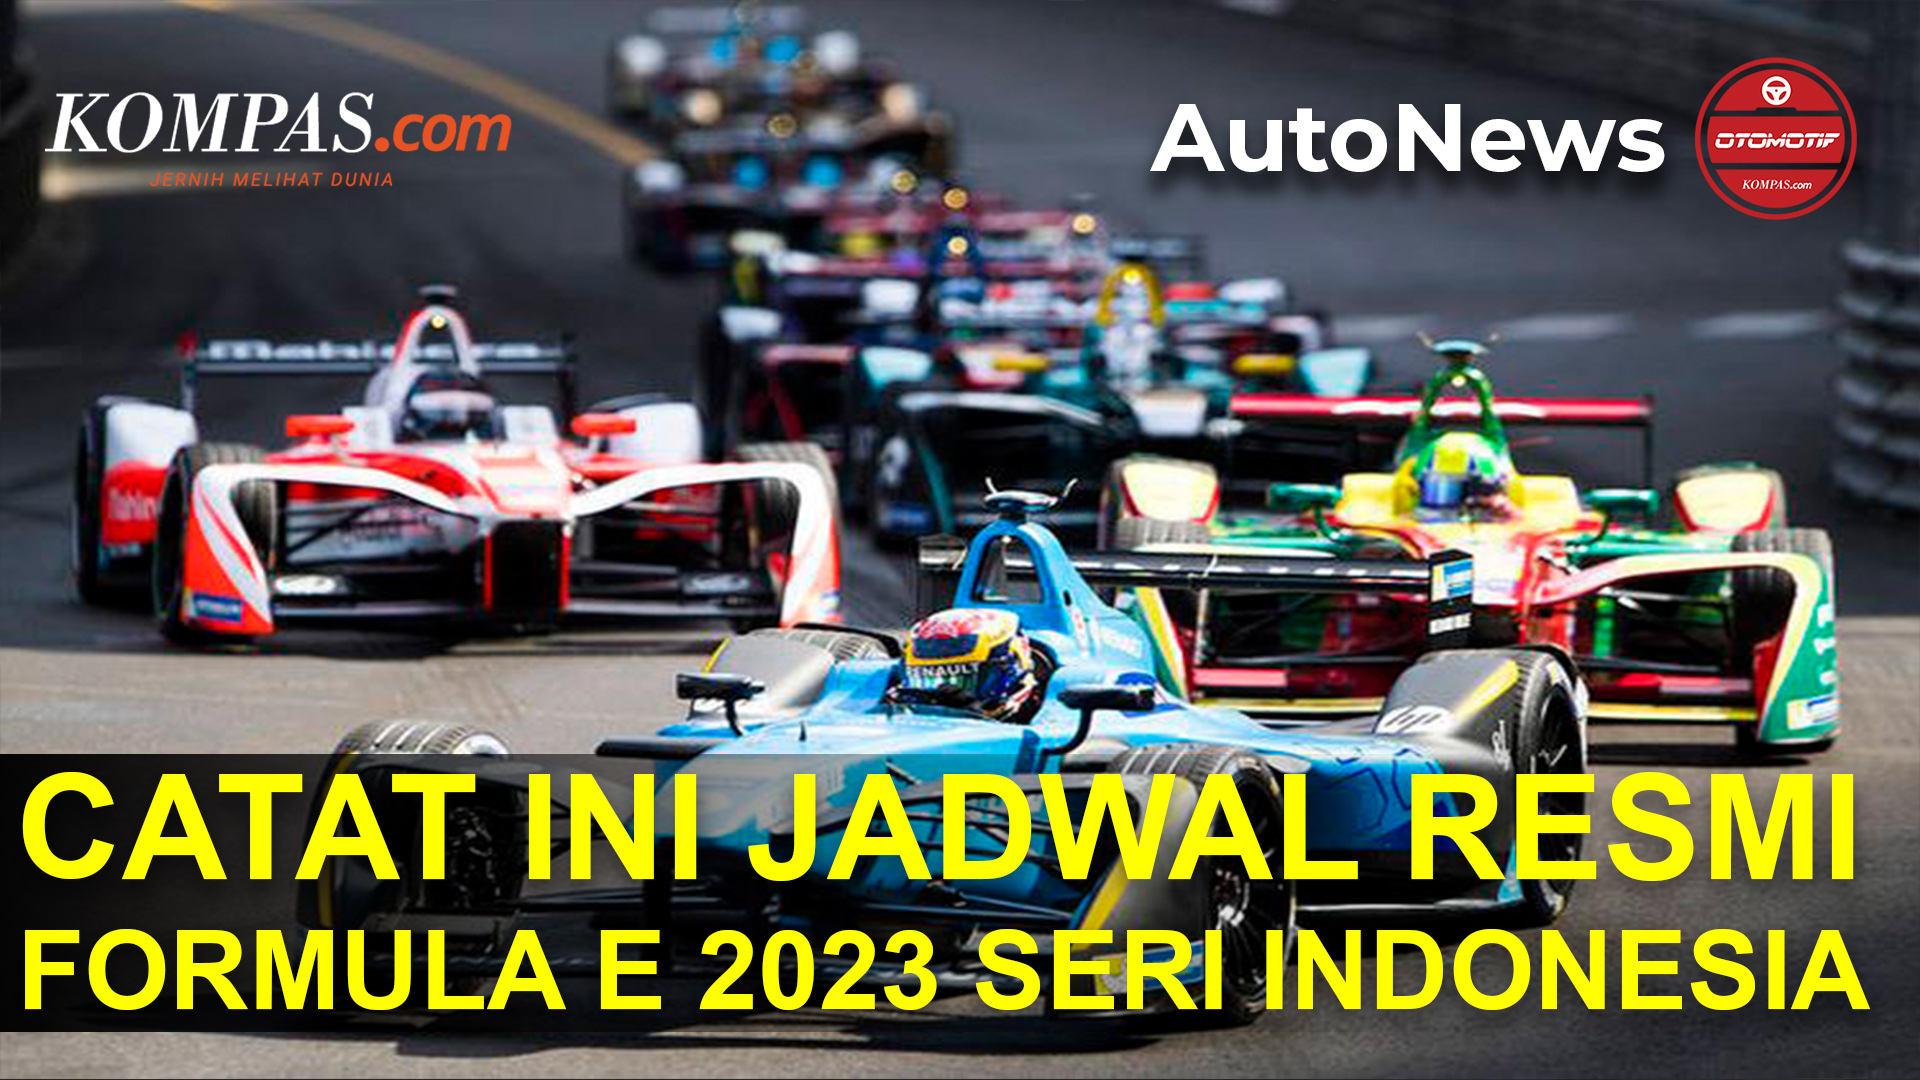 Jadwal Resmi Formula E 2023, Seri Indonesia Digelar Awal Juni 2023